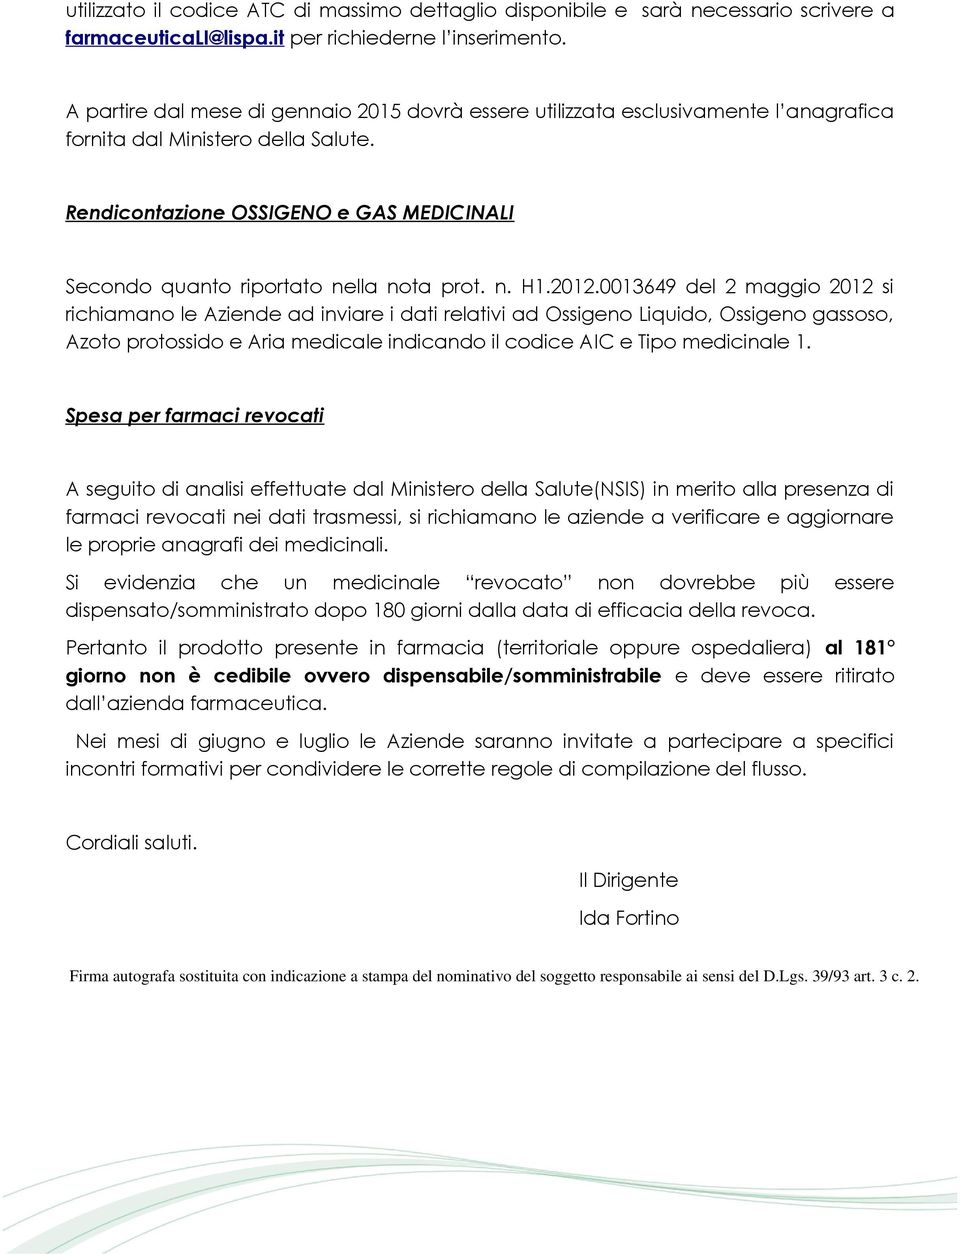 Rendicontazione OSSIGENO e GAS MEDICINALI Secondo quanto riportato nella nota prot. n. H1.2012.